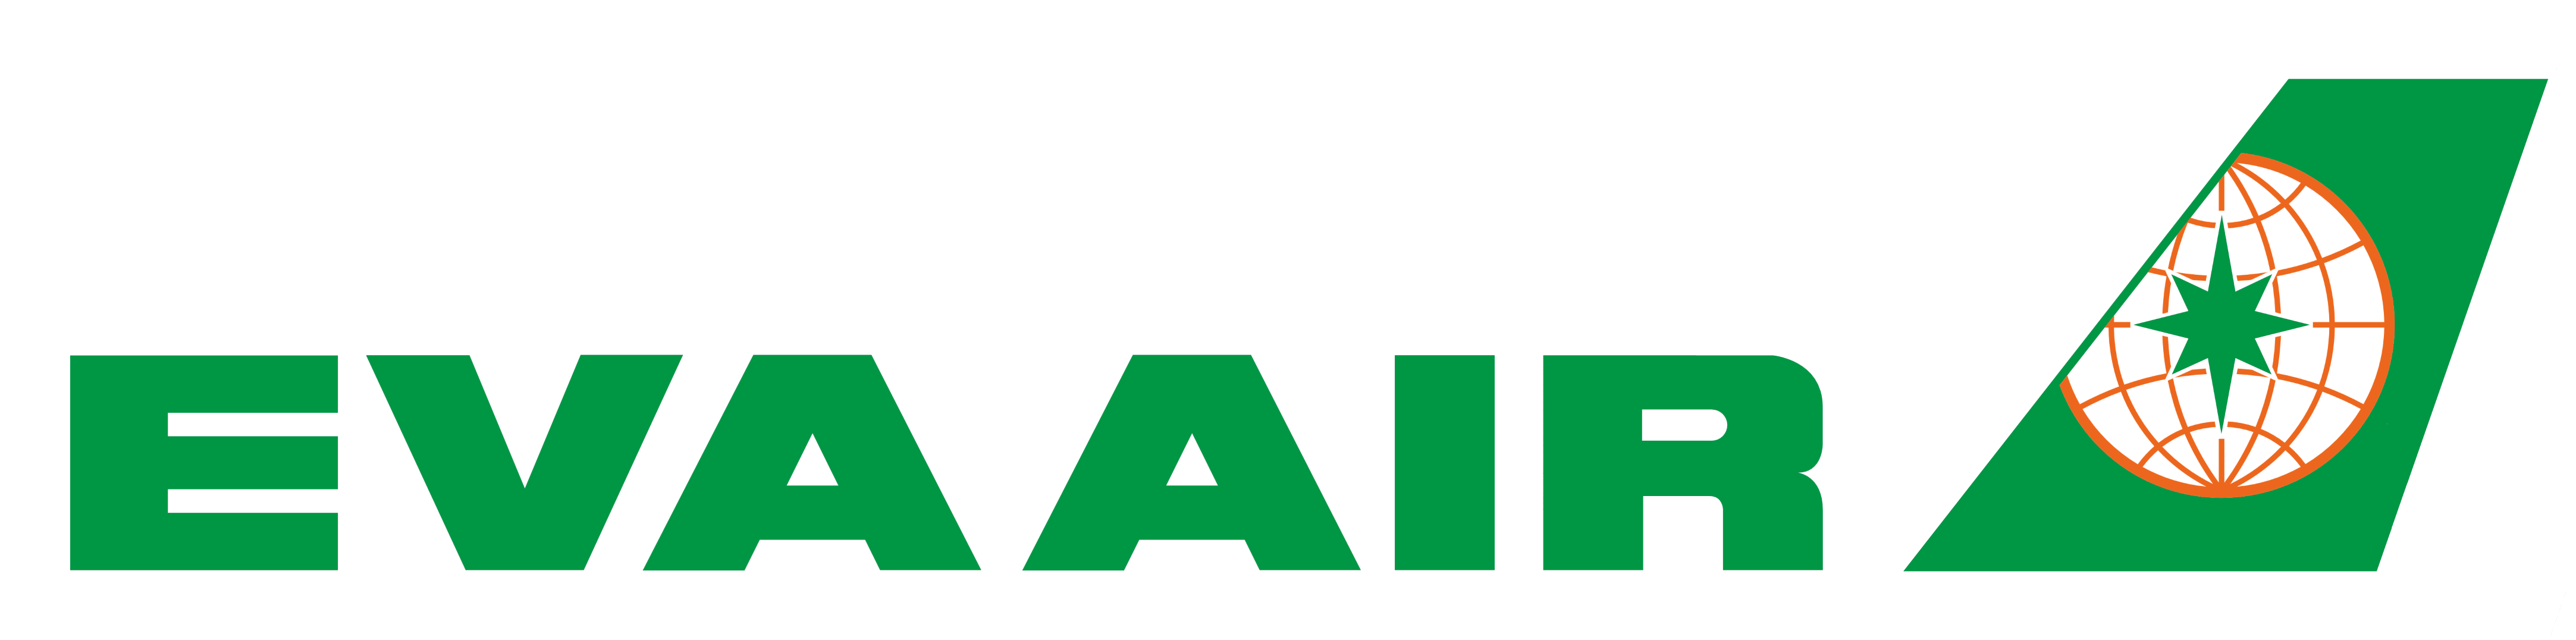 Green Air Logo - Aviation Jobs, Tech & Cabin Crew. CAE Parc Aviation